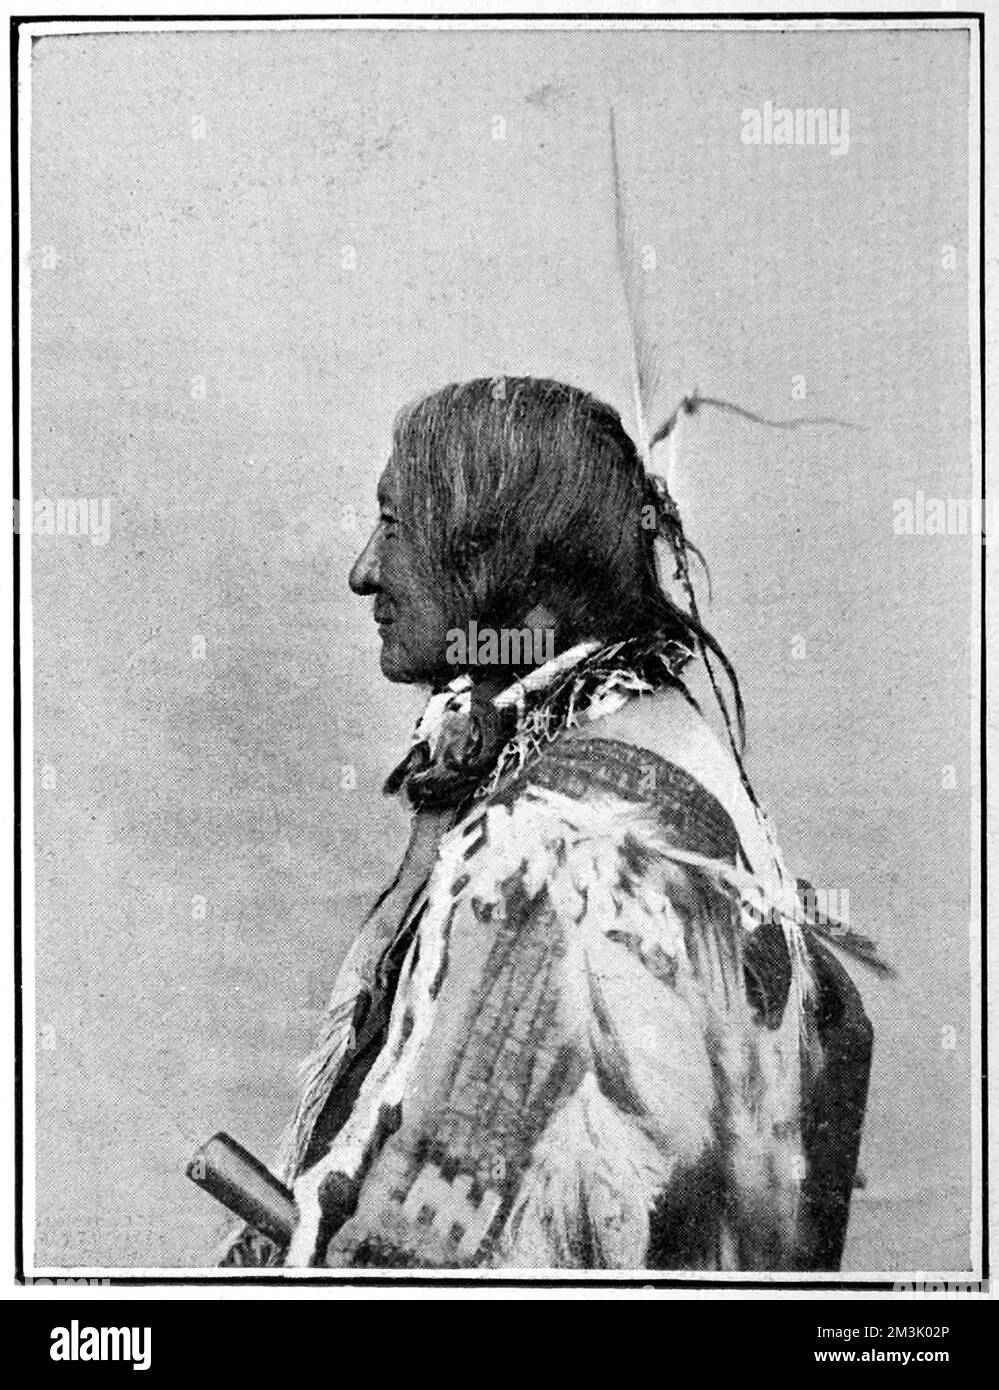 In all ihrer Kriegsbemalung, Chiefs des verschwundenen Sioux-Stammes. Die Sioux waren ursprünglich der wichtigste Stamm in Dakota. 1851 hatten sie fast ihr gesamtes Land verloren. Ihr letzter großer Aufstieg war 1876, als sie die Amerikaner unter ihrem großen Chief Sitting Bull herausforderten Datum: 1905 Stockfoto